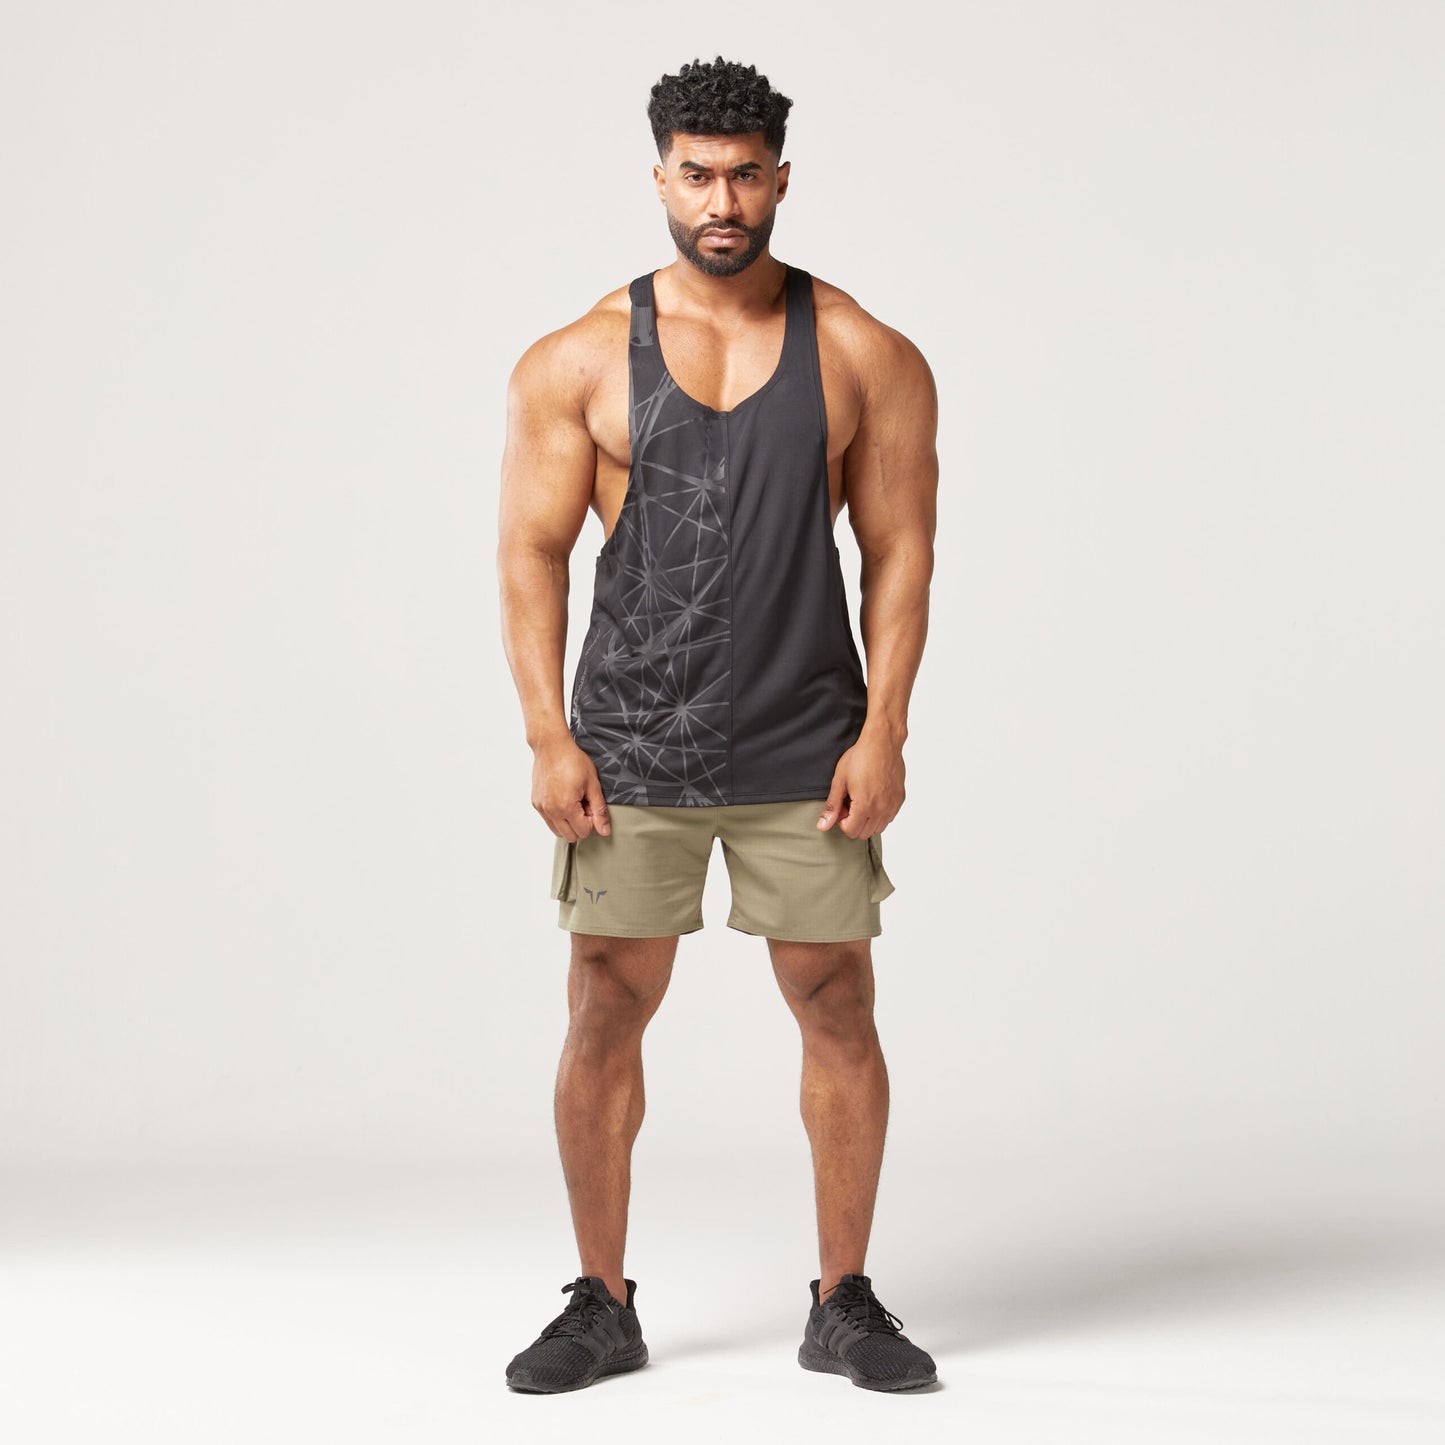 squatwolf-gym-wear-code-split-stringer-black-stringer-vests-for-men